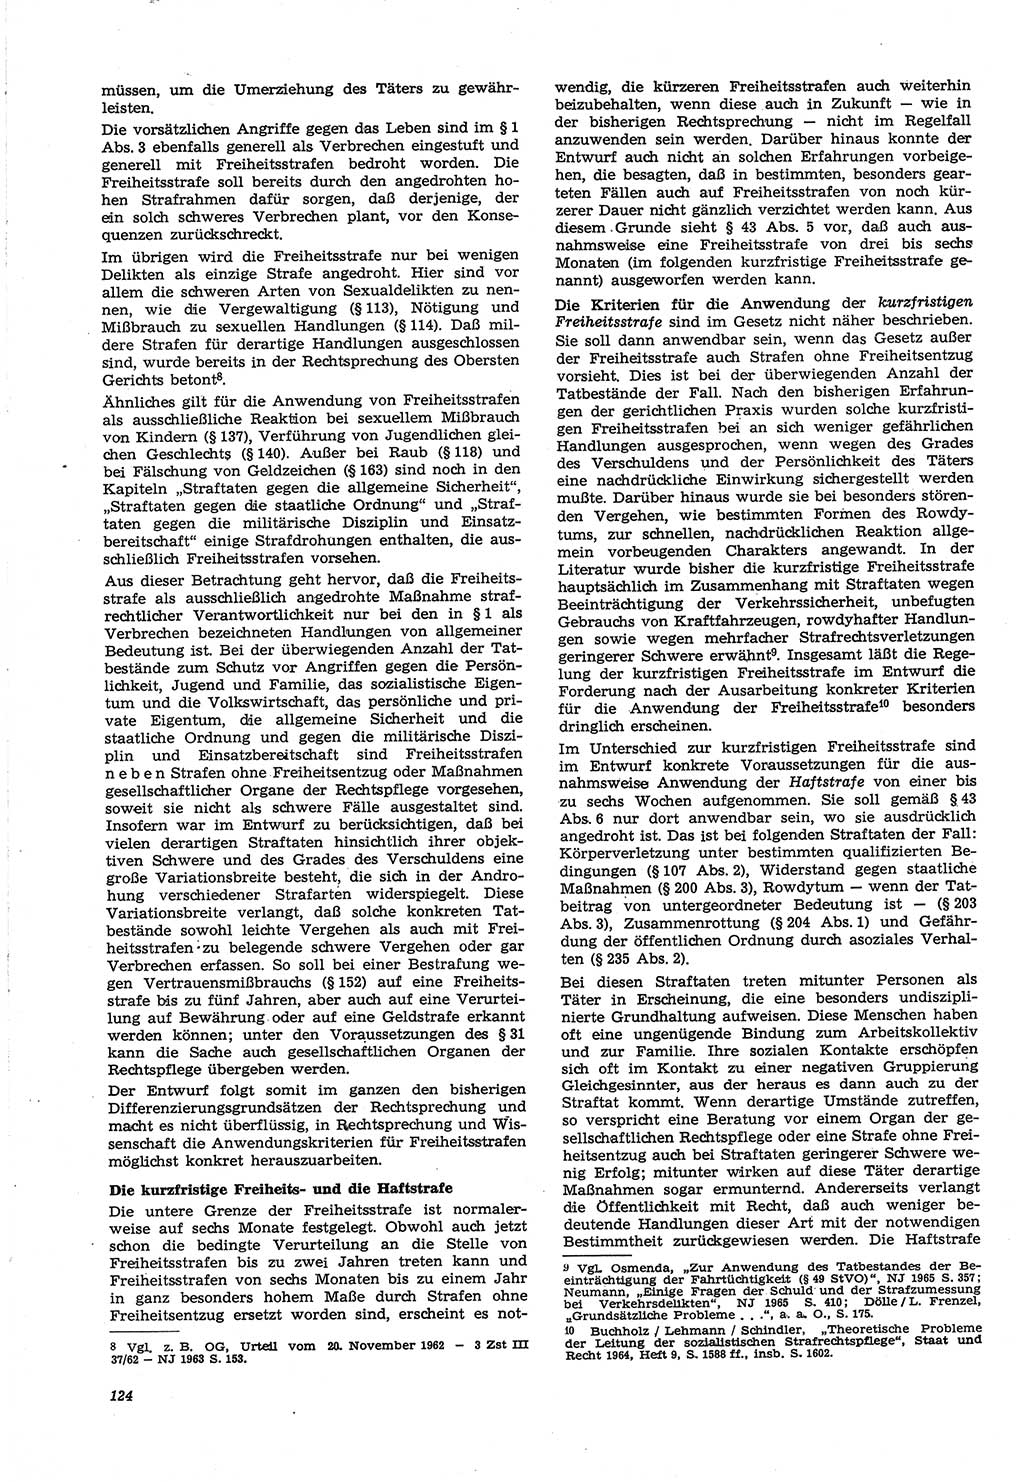 Neue Justiz (NJ), Zeitschrift für Recht und Rechtswissenschaft [Deutsche Demokratische Republik (DDR)], 21. Jahrgang 1967, Seite 124 (NJ DDR 1967, S. 124)